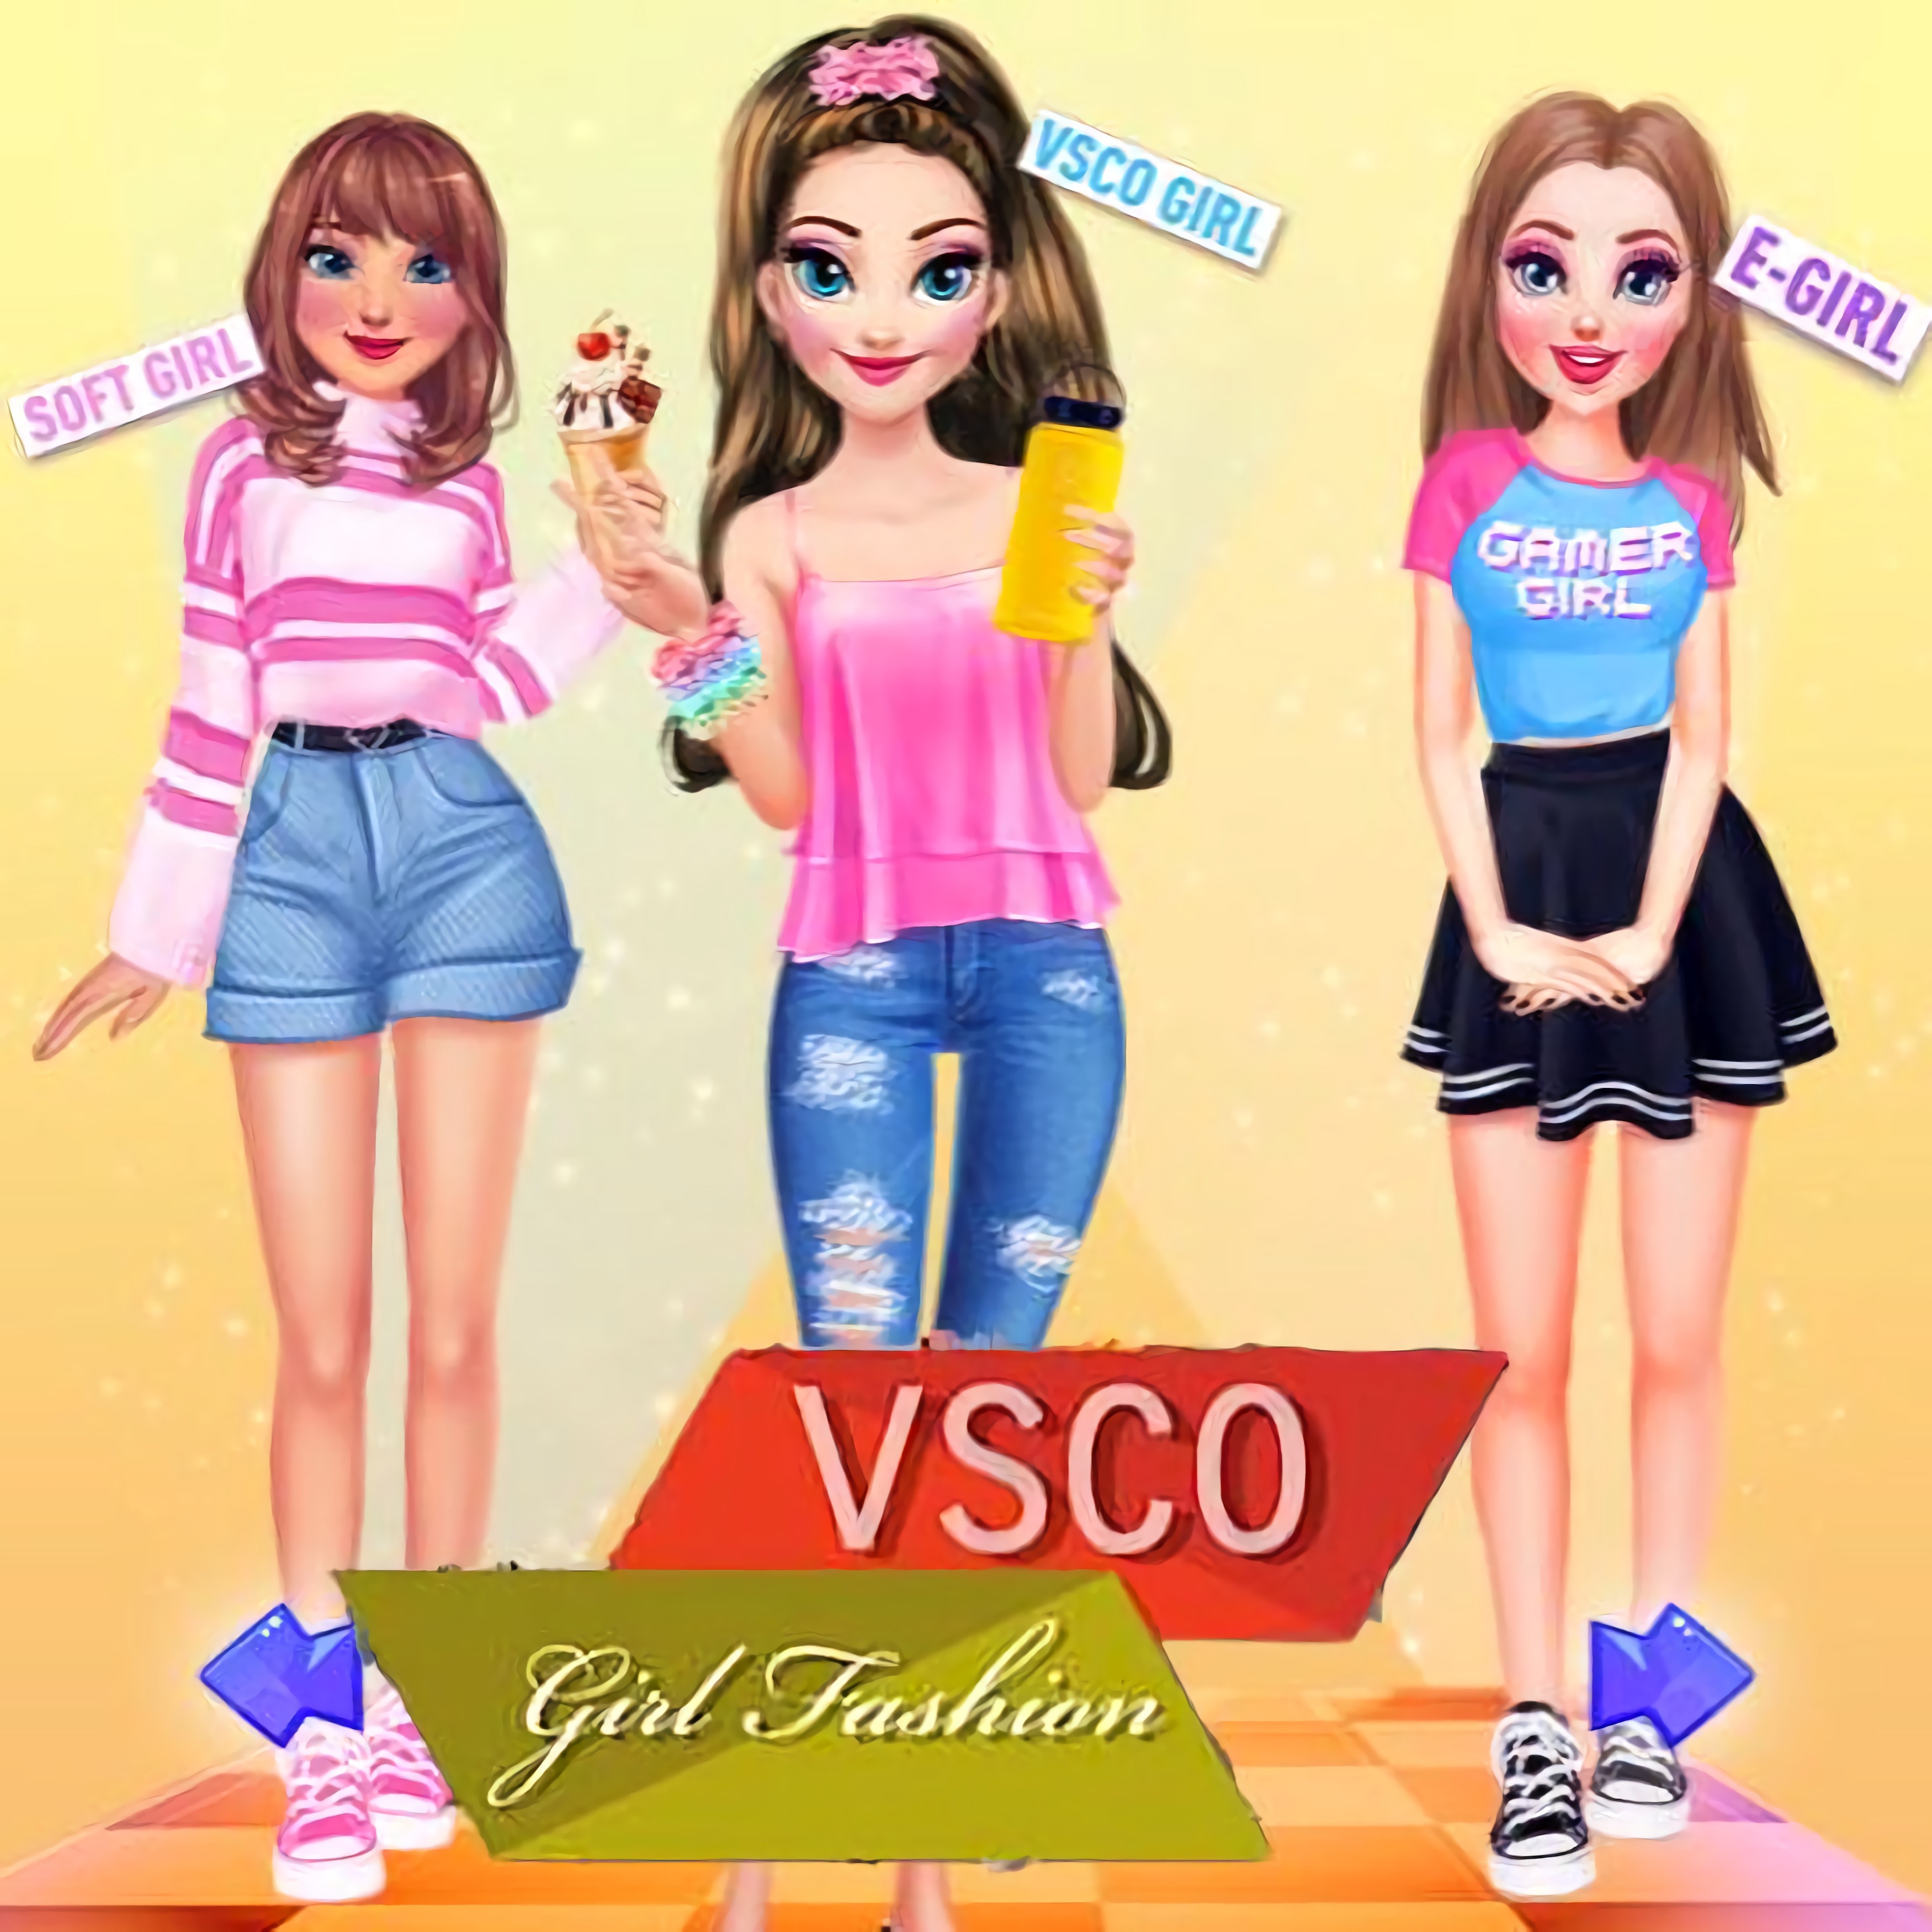 Vsco Girl Fashion juego en 